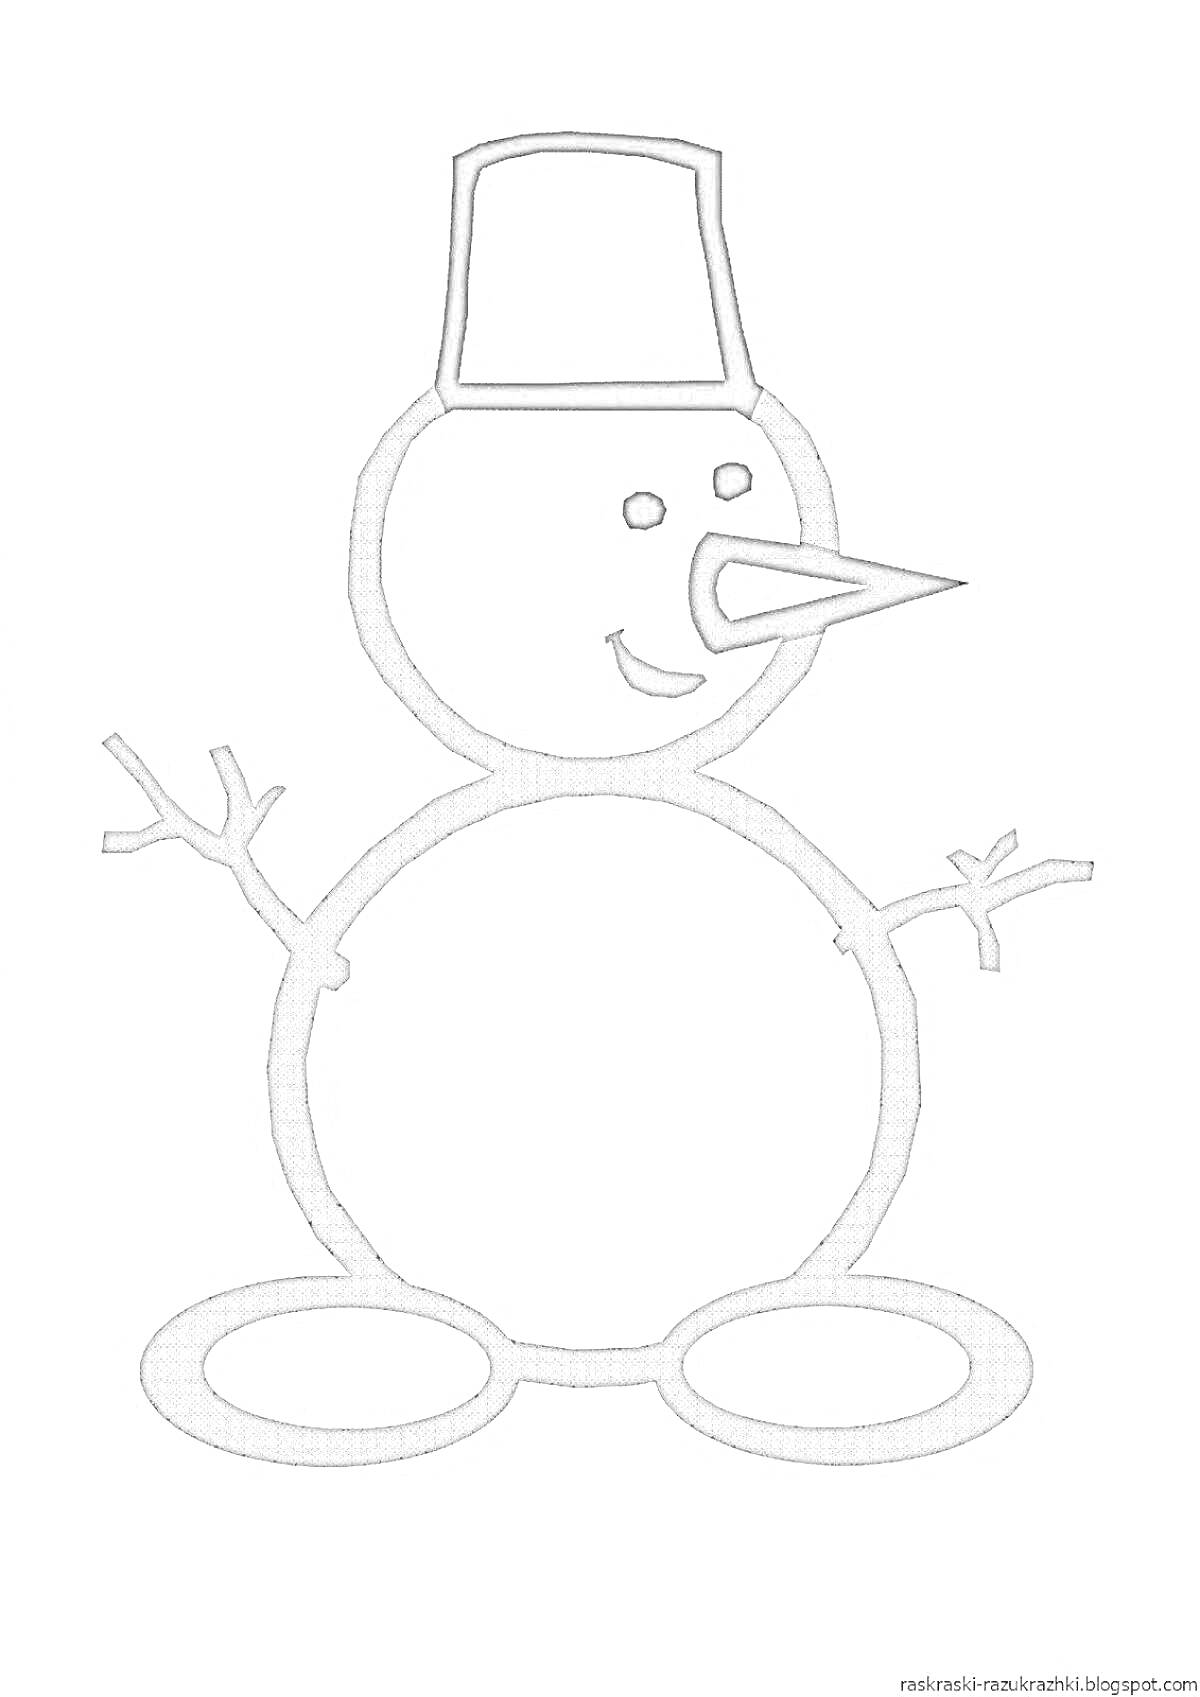 Раскраска Снеговик с ведром на голове, морковкой носом и палками вместо рук